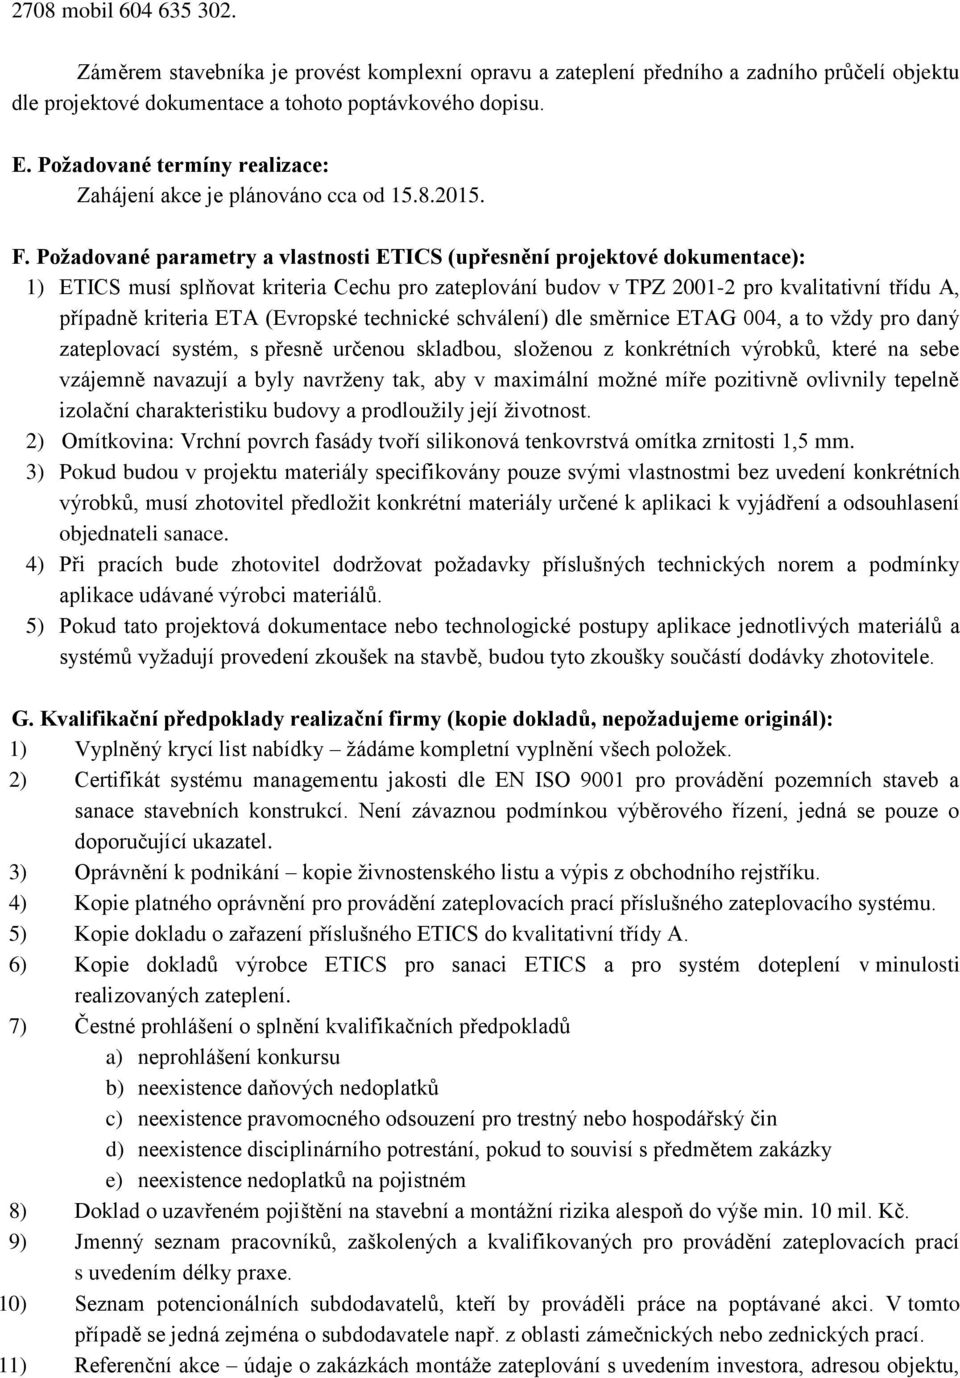 Požadované parametry a vlastnosti ETICS (upřesnění projektové dokumentace): 1) ETICS musí splňovat kriteria Cechu pro zateplování budov v TPZ 2001-2 pro kvalitativní třídu A, případně kriteria ETA